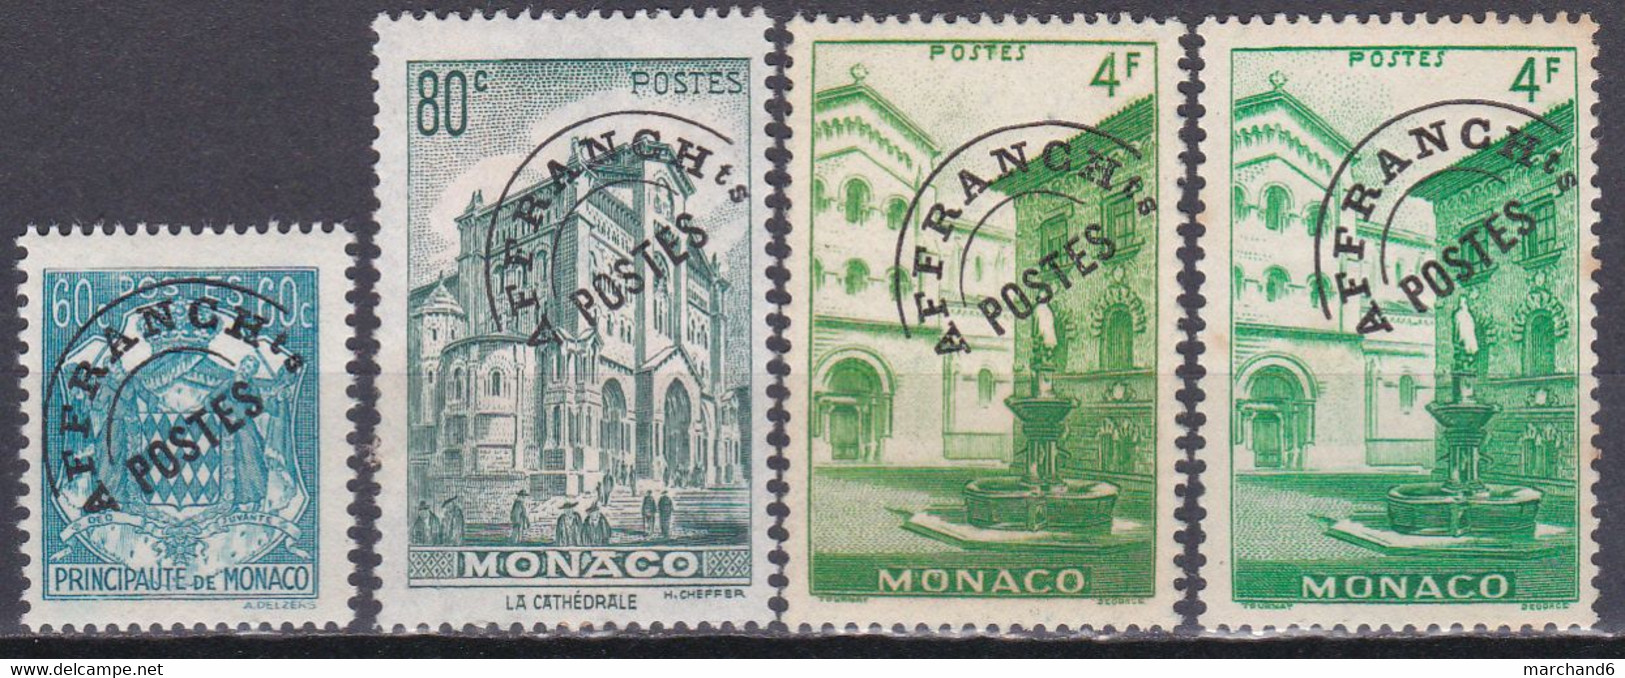 Monaco Timbres Poste Suchargés 1943-51 Préoblitérés N°1-2-3-3a Neuf*charnière - Préoblitérés